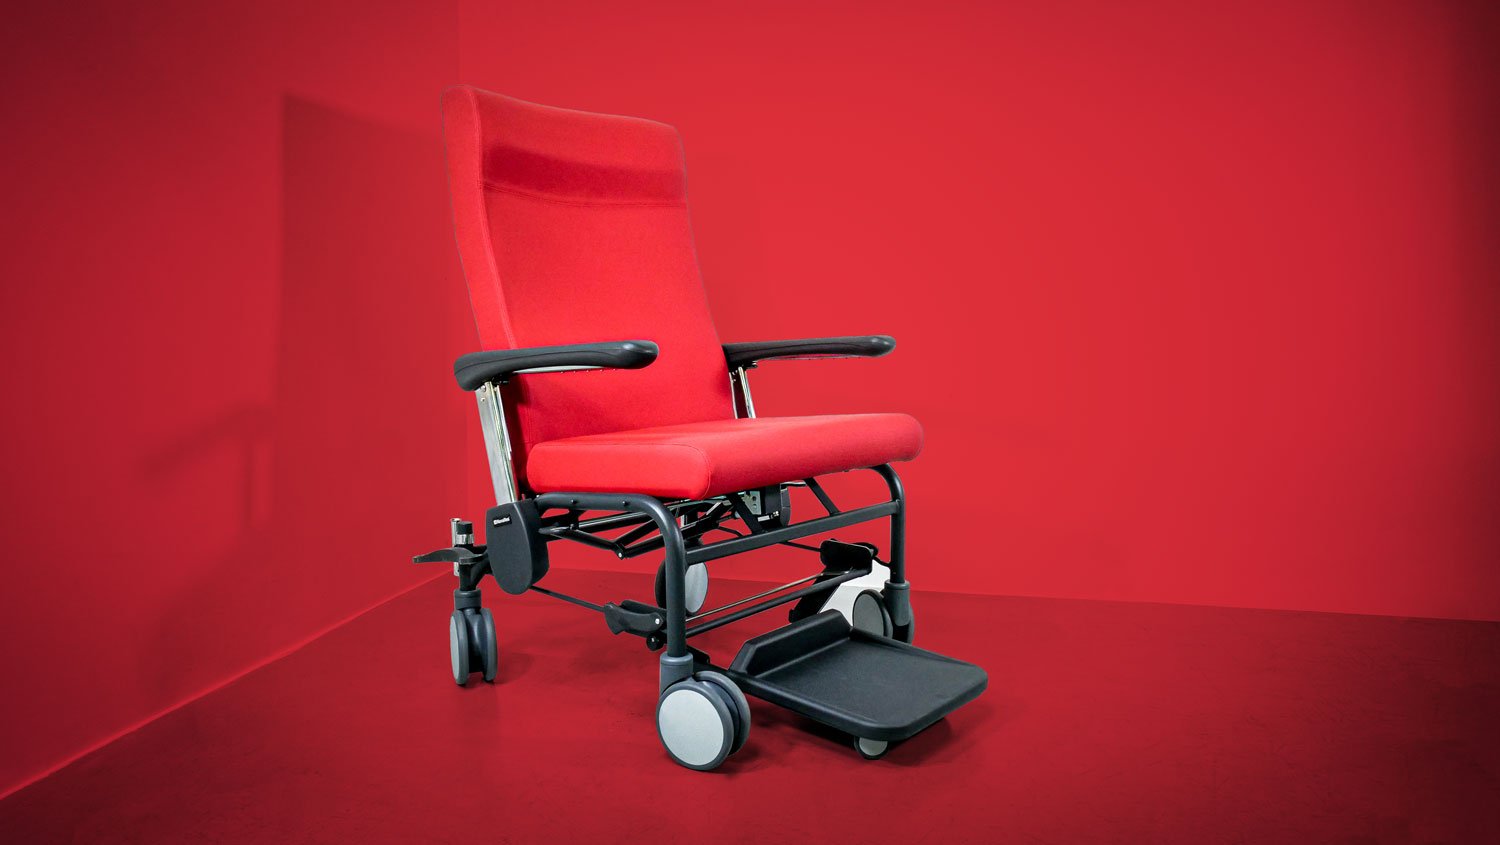 fauteuil bariatrique médicalisé solide pour accueillir les personnes à forte corpulence